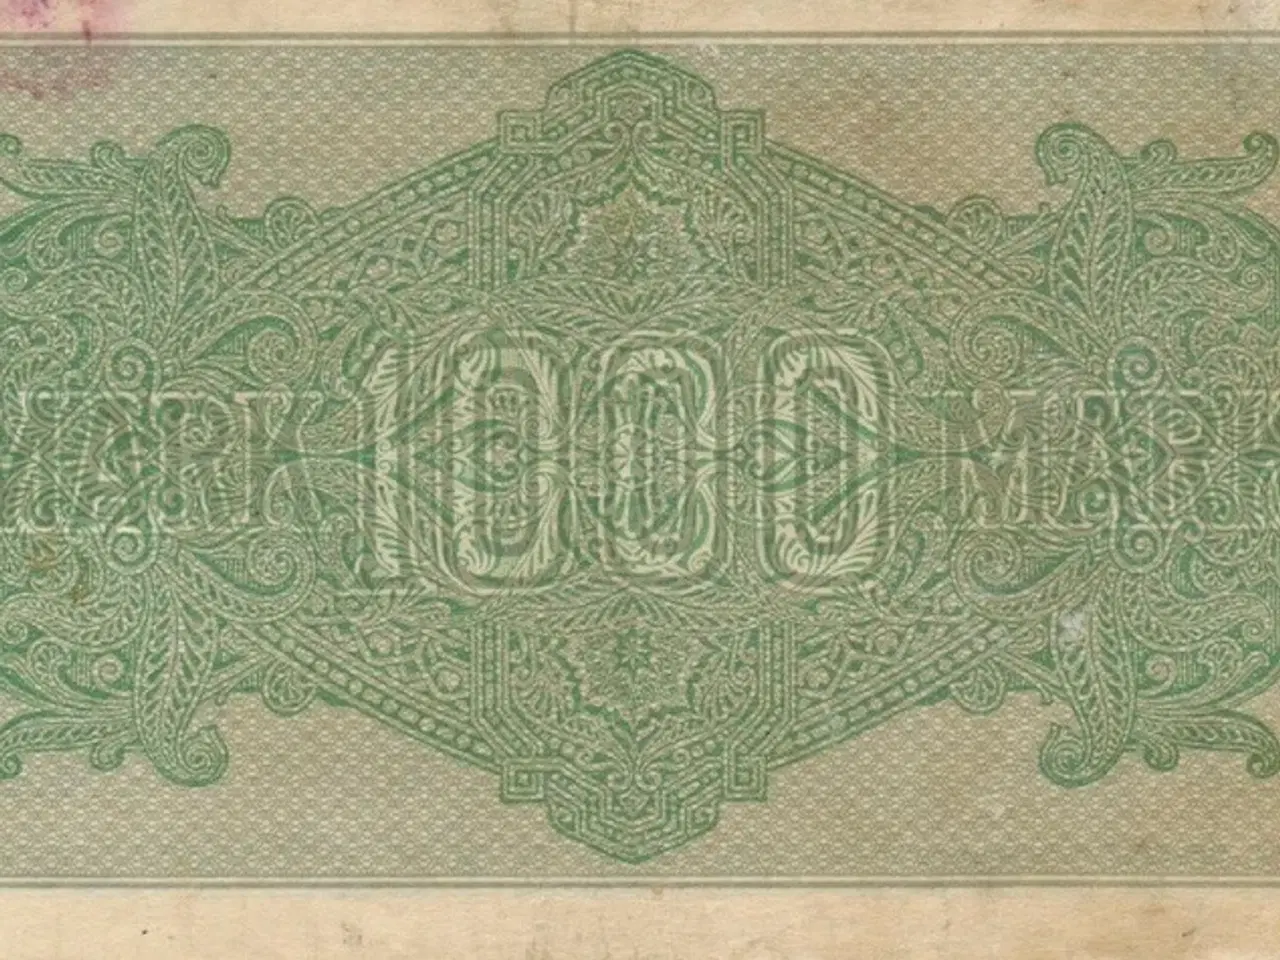 Billede 2 - 1000 Mark seddel